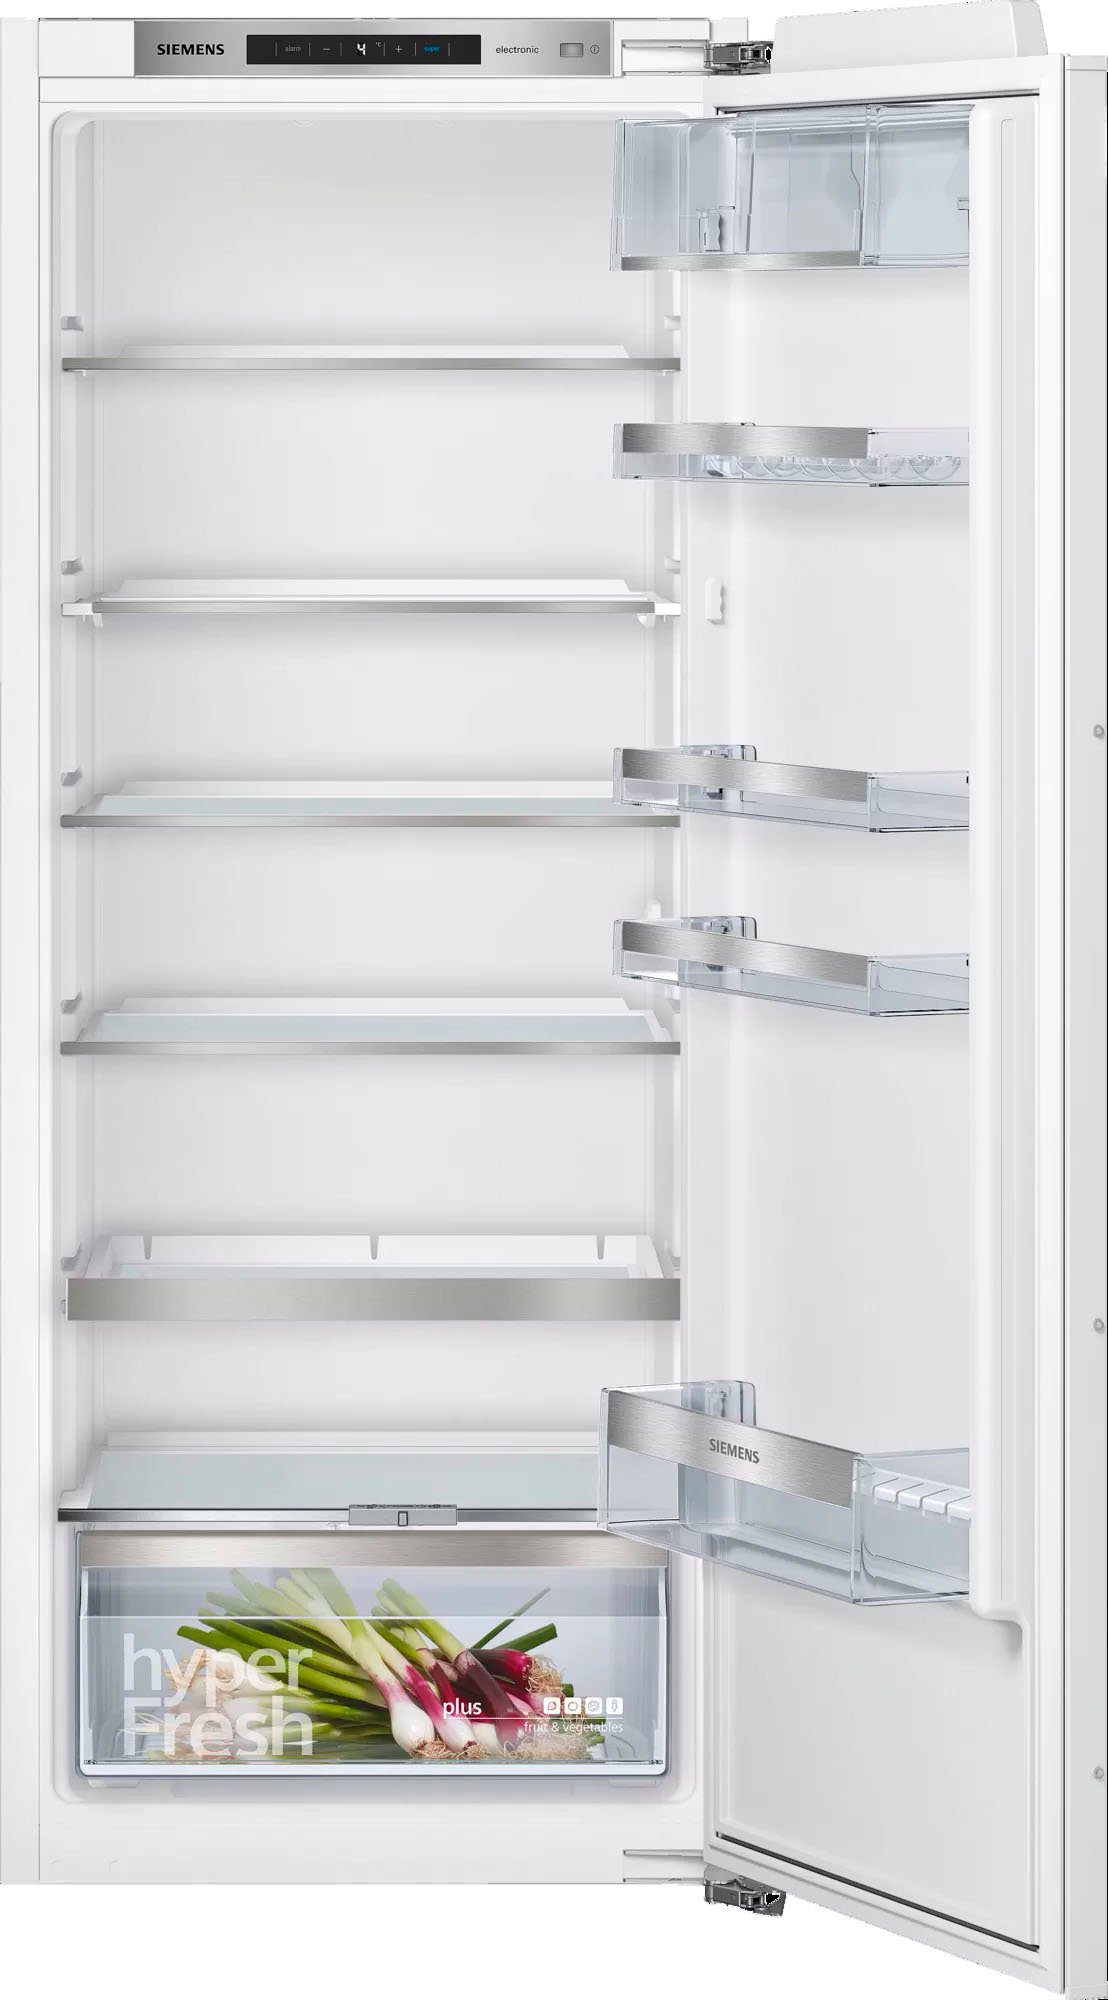 SIEMENS Einbaukühlschrank iQ500 KI51RADE0, 139,7 dB(A) 33 cm 55,8 cm Luftschallemission: breit, hoch